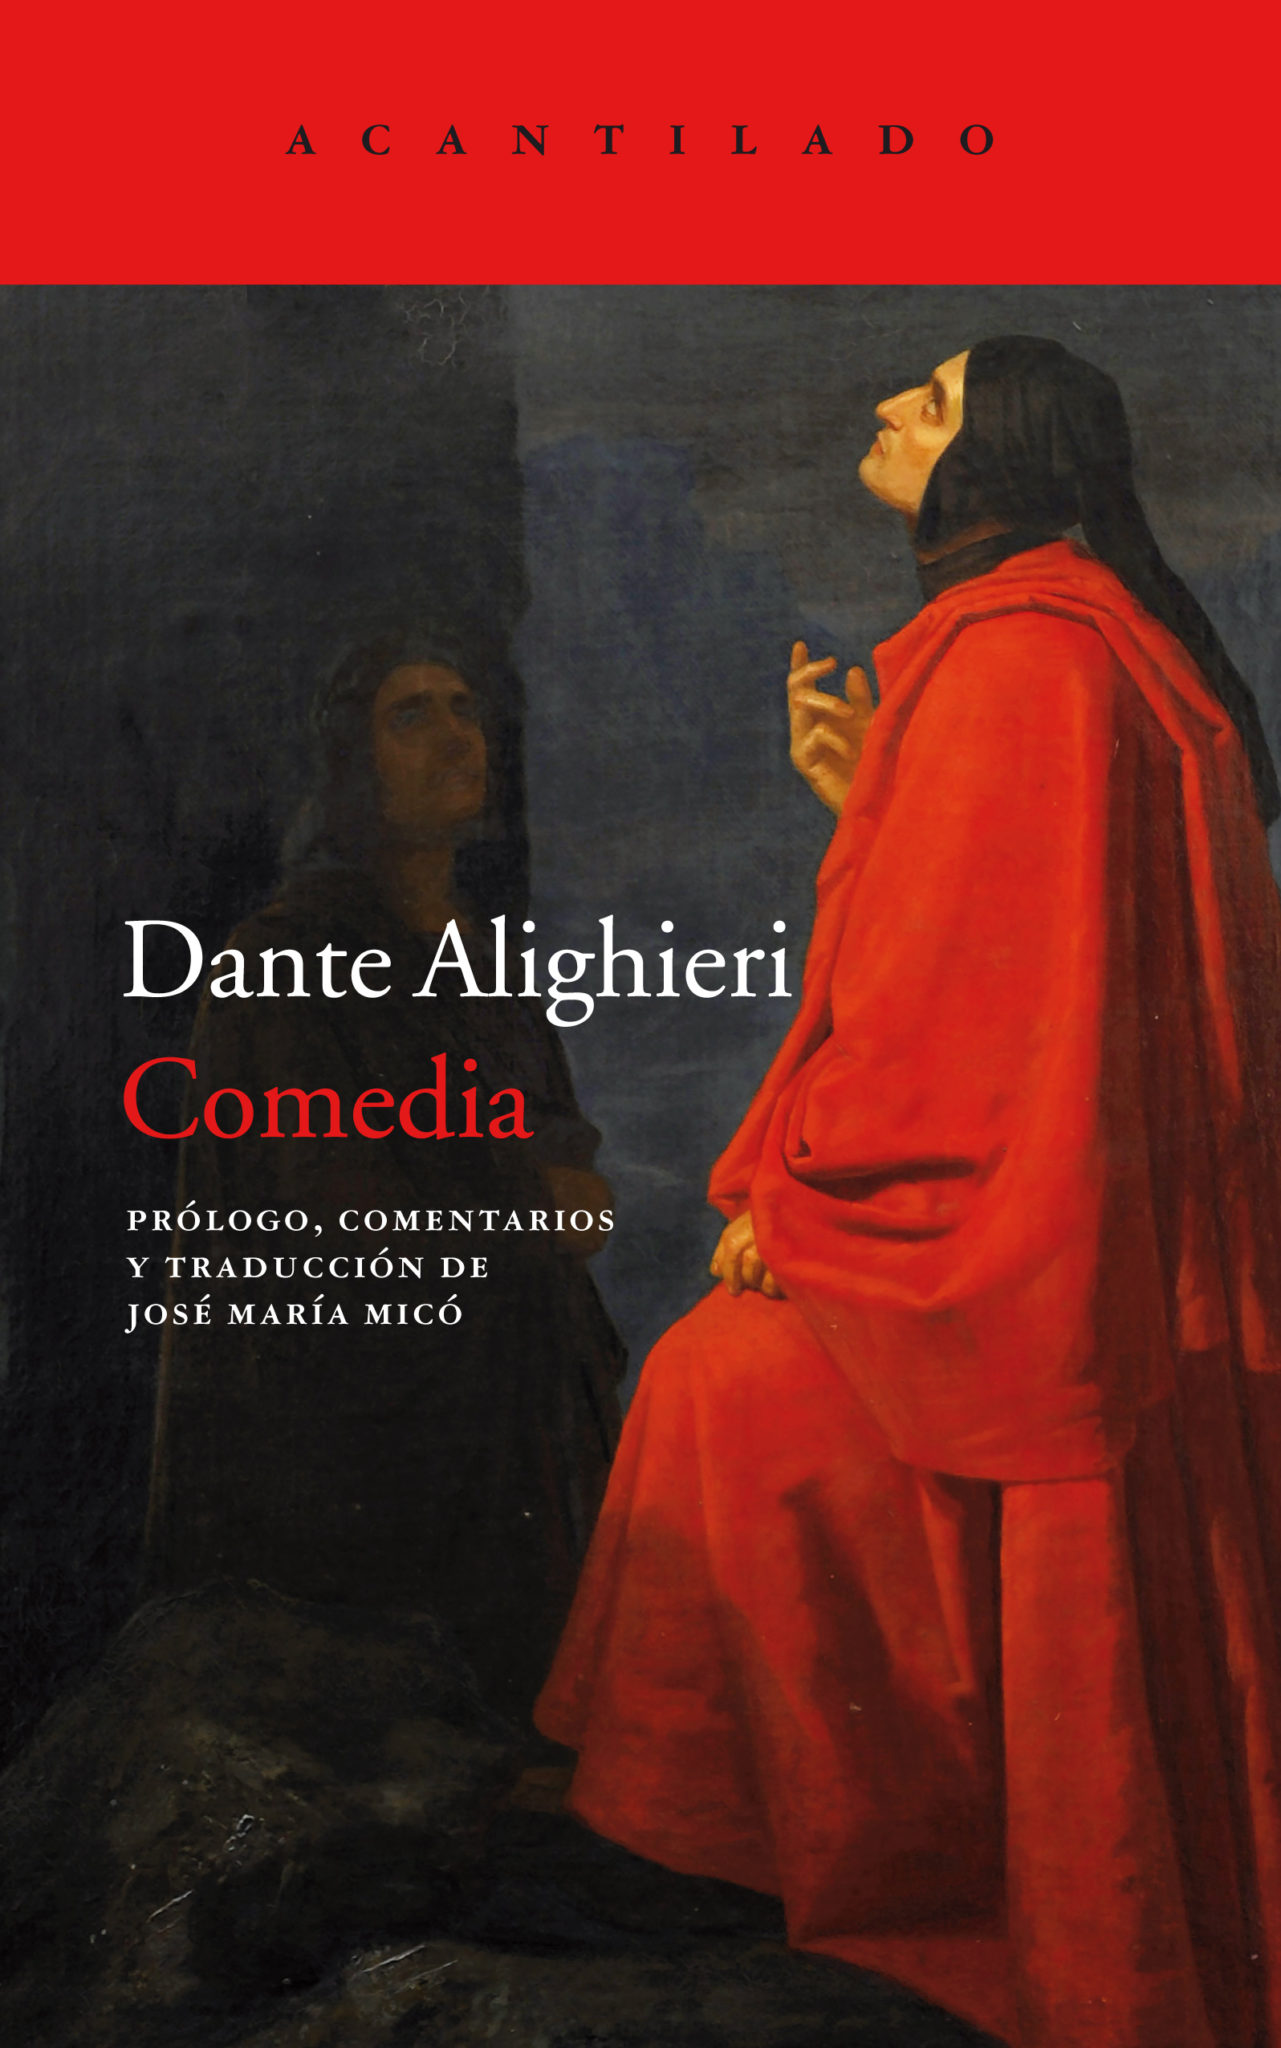 Presentación de Una Comedia, de Dante Alighieri | Librería Ramon Llull, 23 mayo 2019